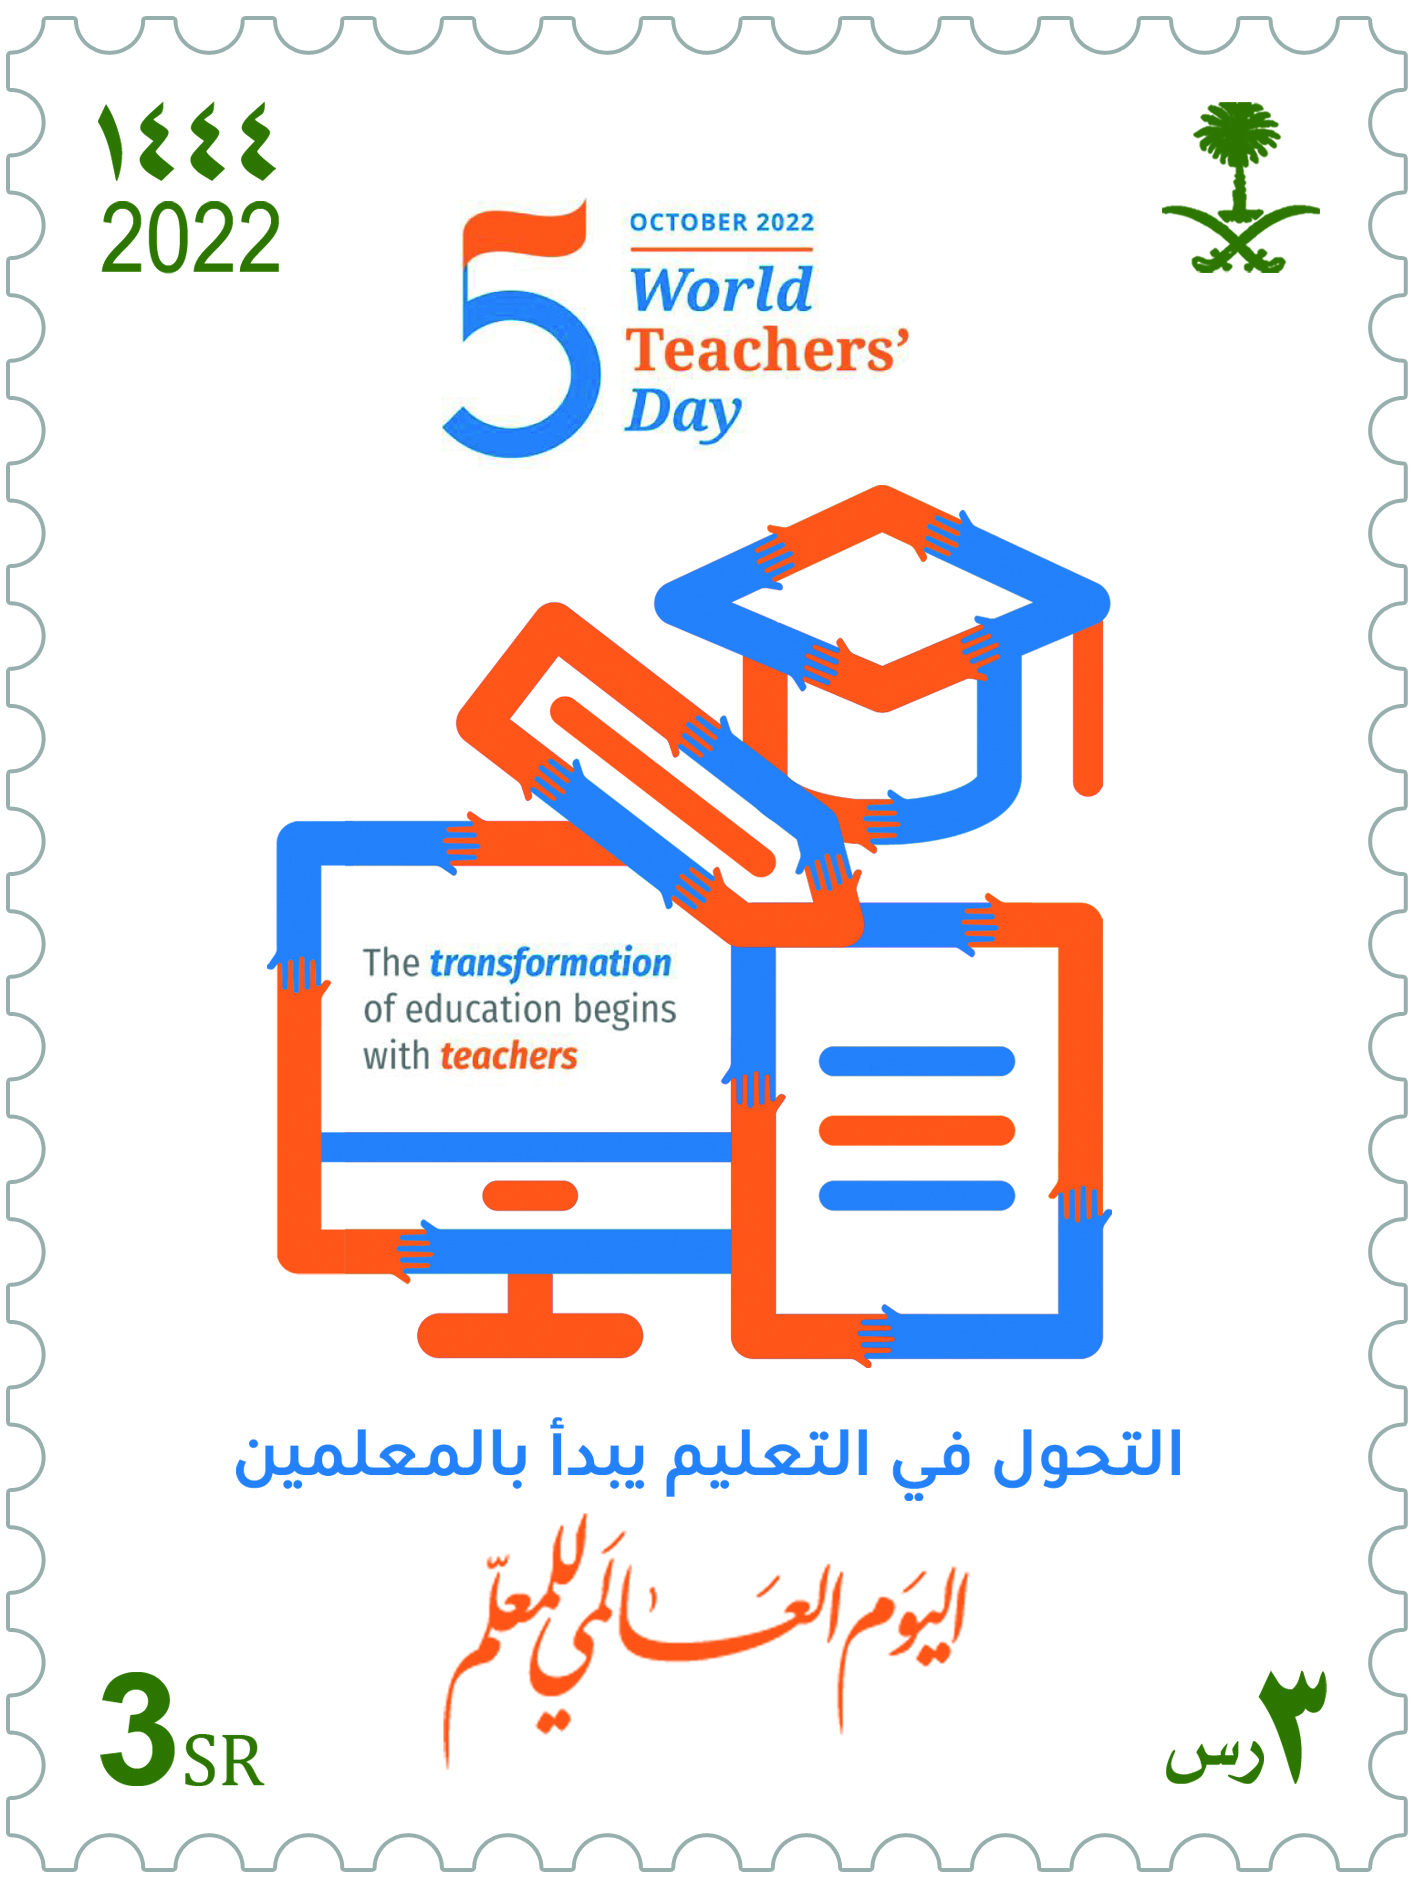 البريد السعودي | سبل يصدر طابعاً بريدياً تخليداً لليوم العالمي للمعلم